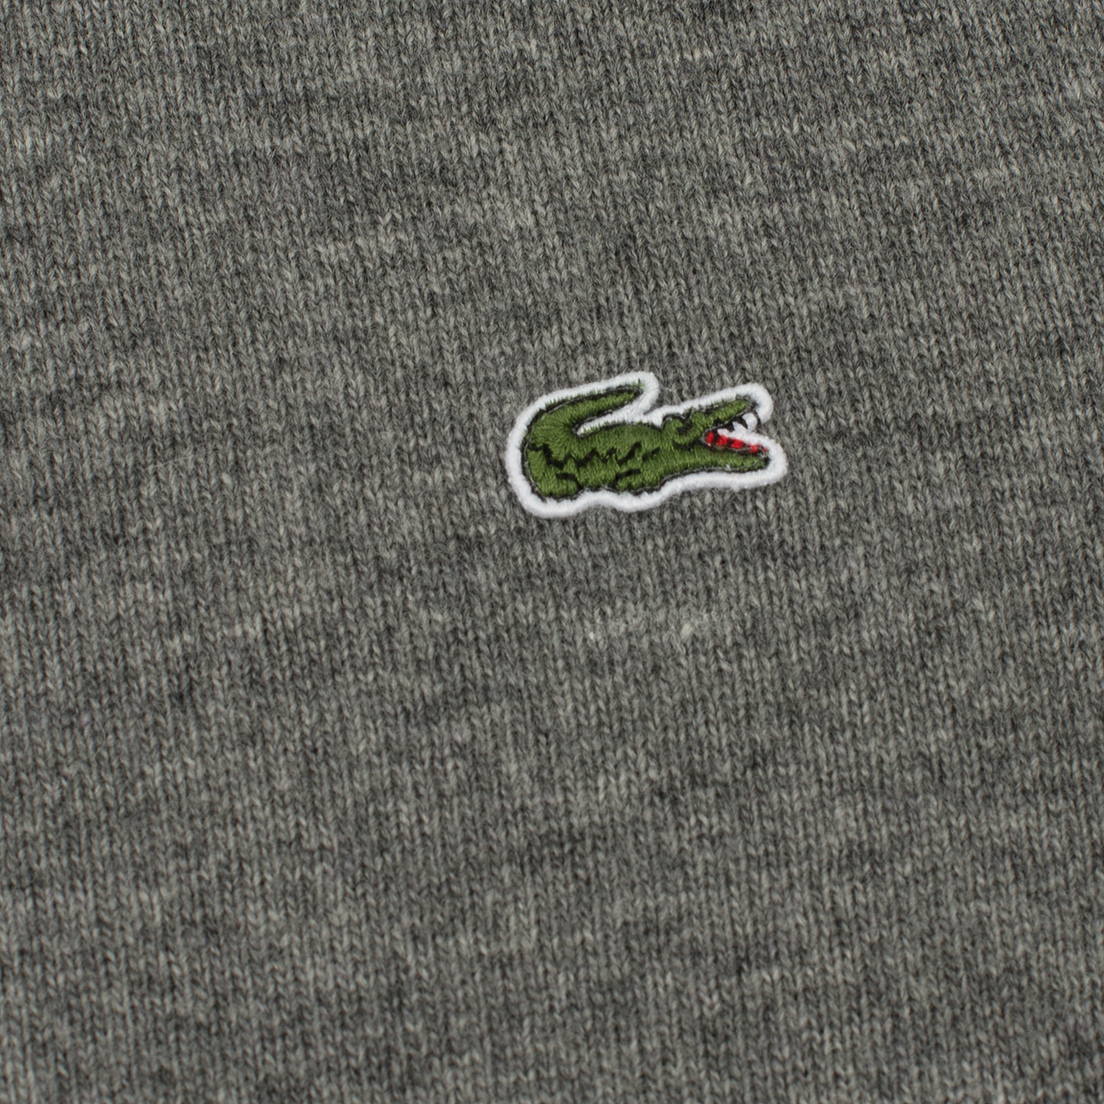 Lacoste Мужской свитер Embroidered Croc Logo Crew Neck